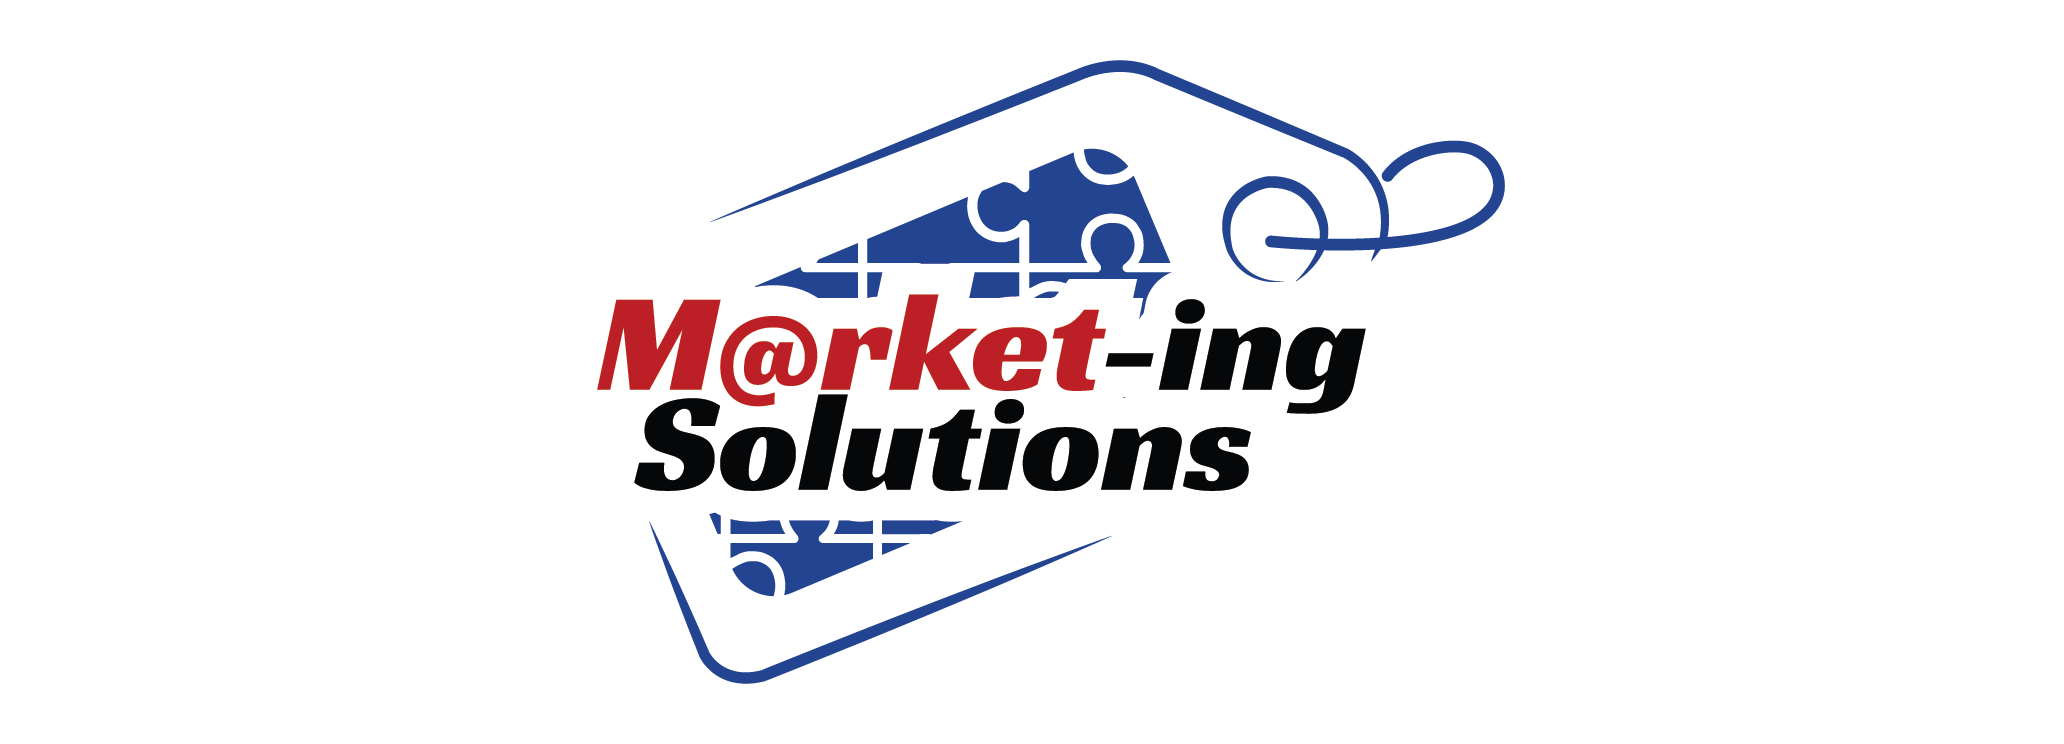 Marketing Solutions logo